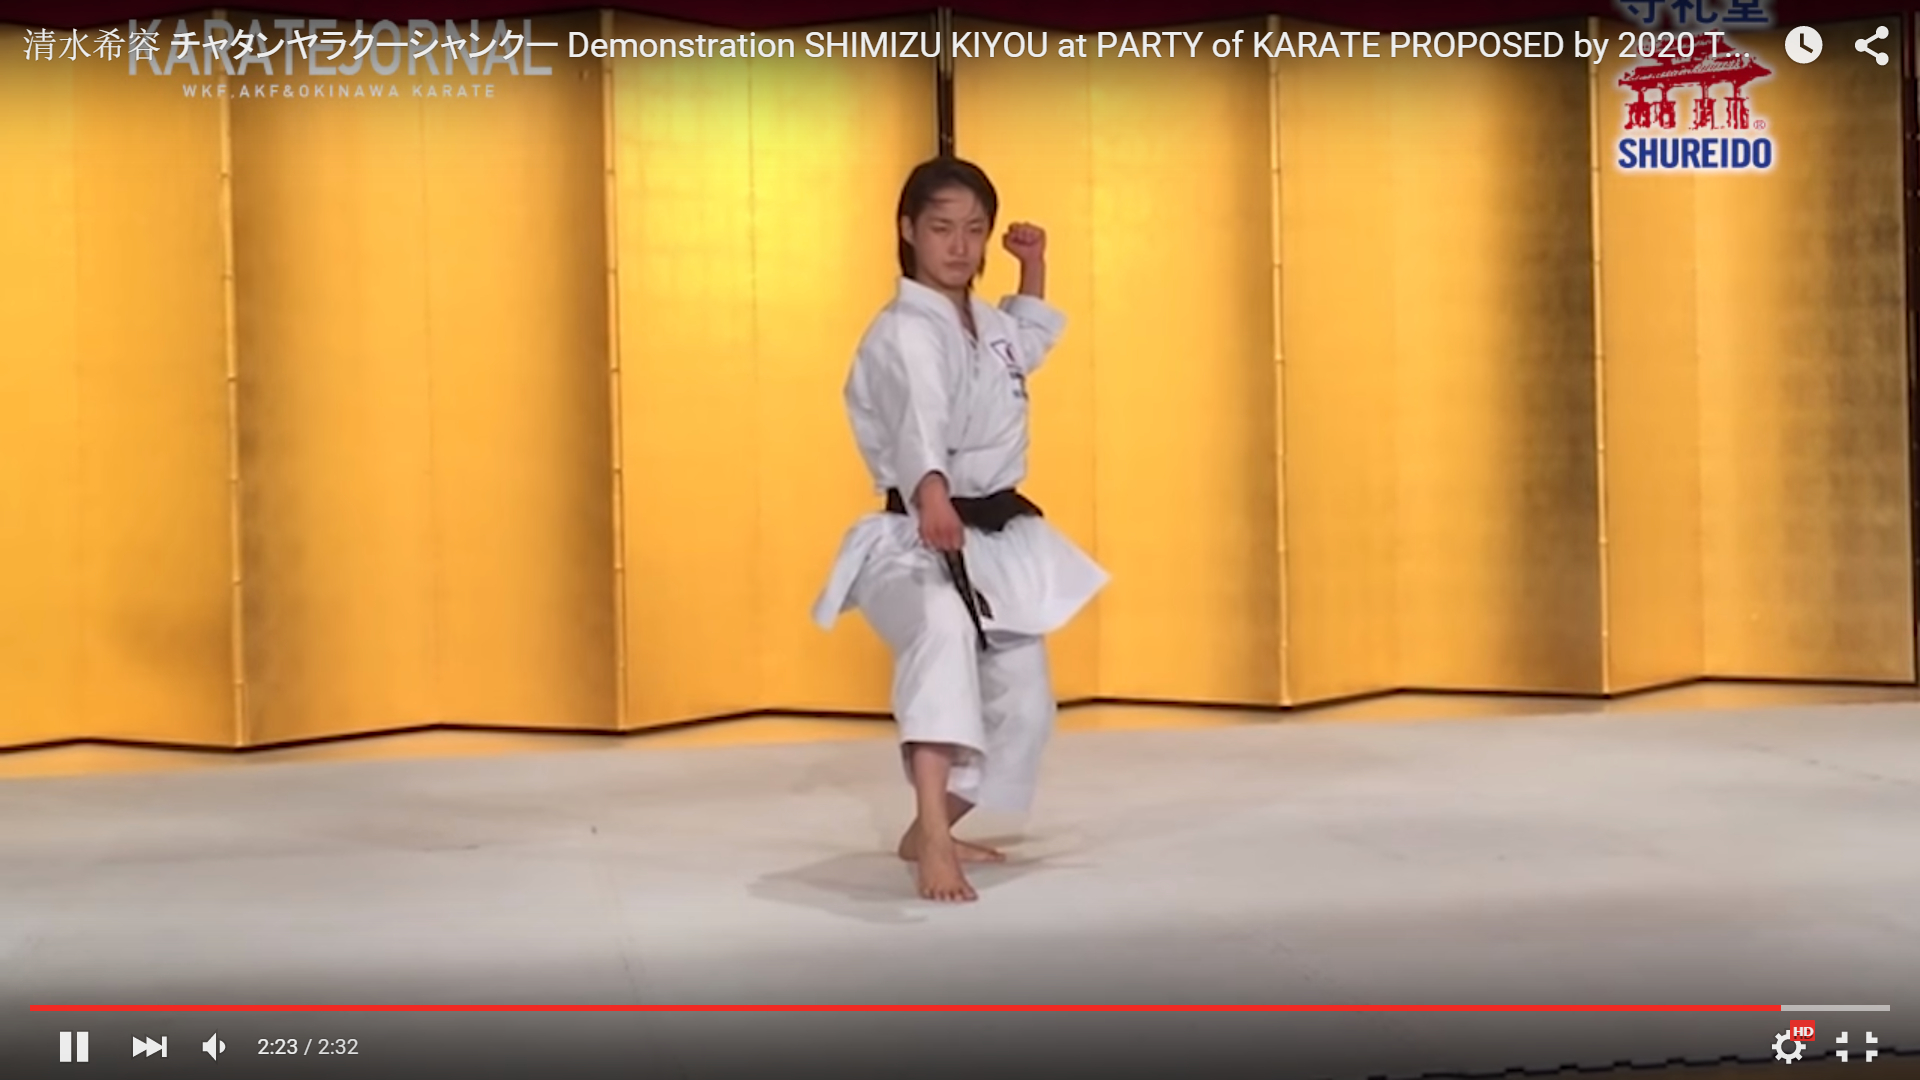 Chatan Yara no Kusanku, performed at an advertisement party for 2020 Summer Olympics in Tokyo.